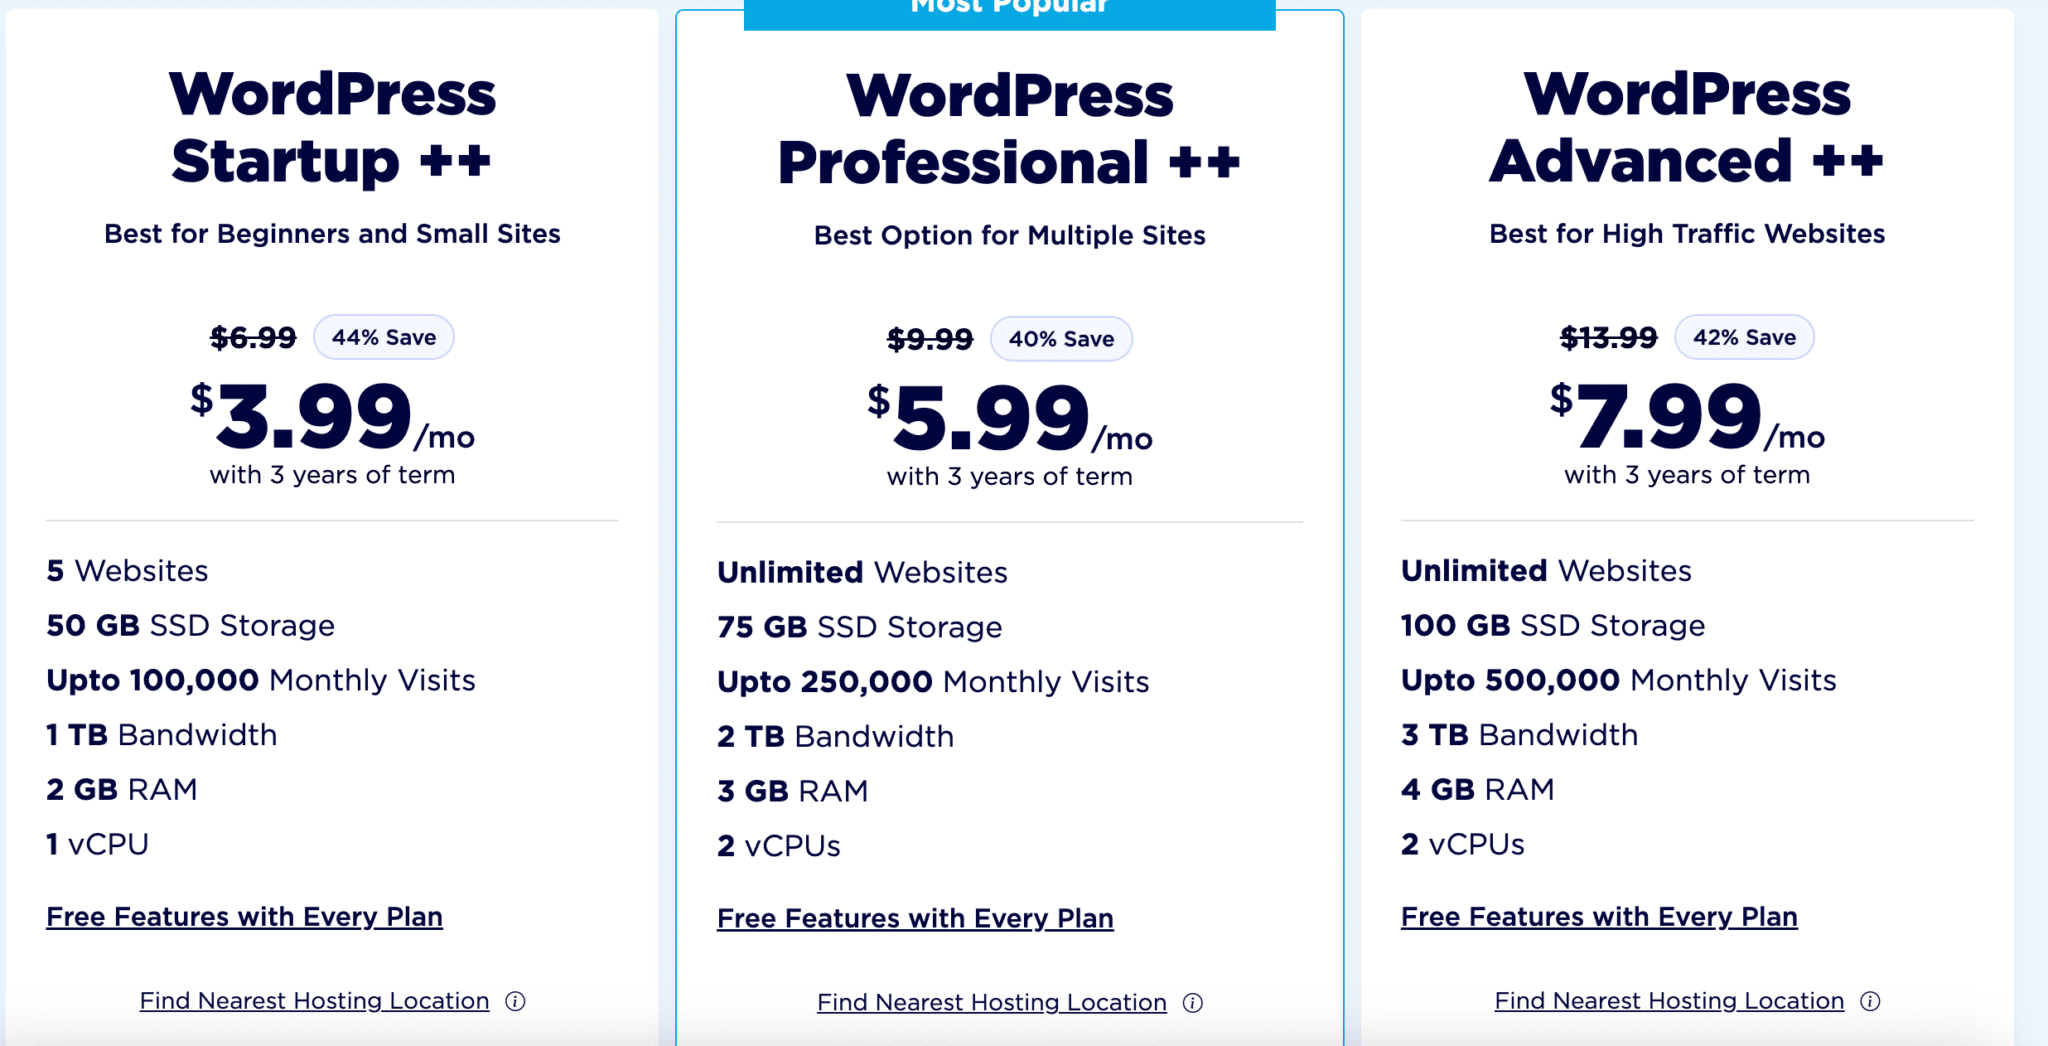 AccuWeb vs HostGator  accuweb WP pricing